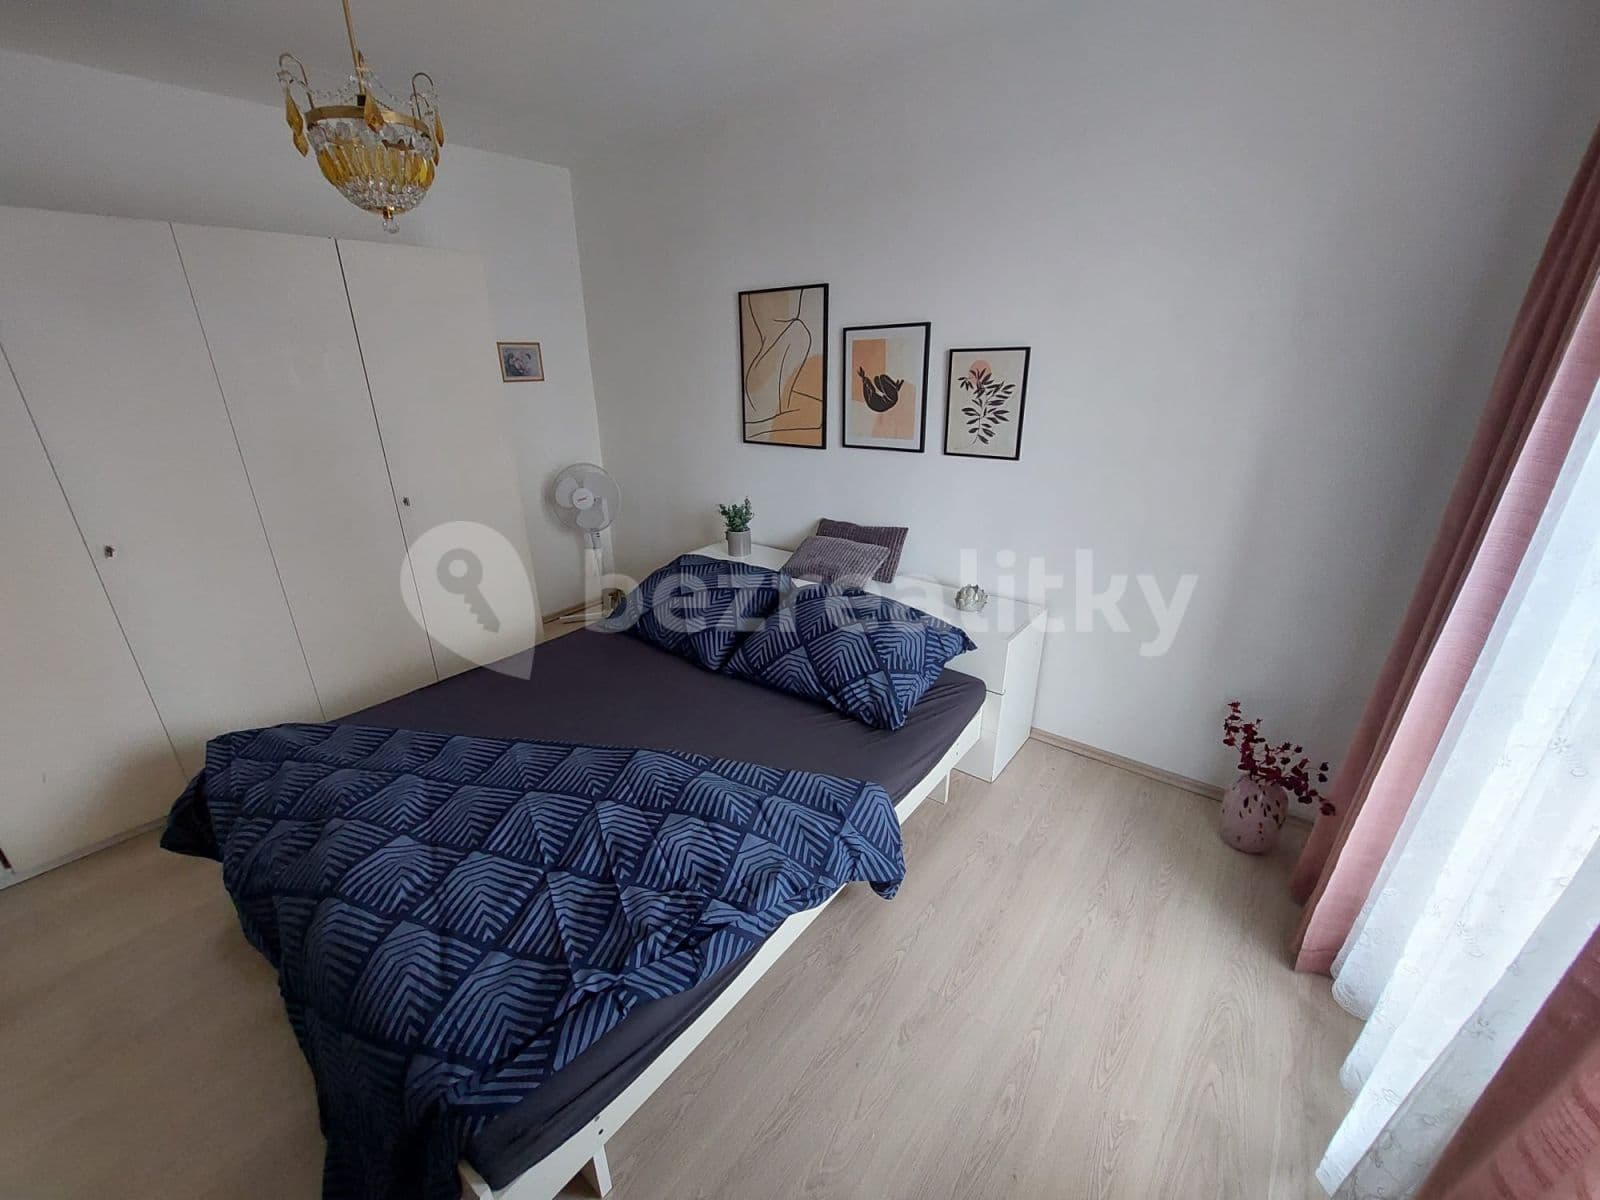 3 bedroom flat for sale, 76 m², Prague, Prague